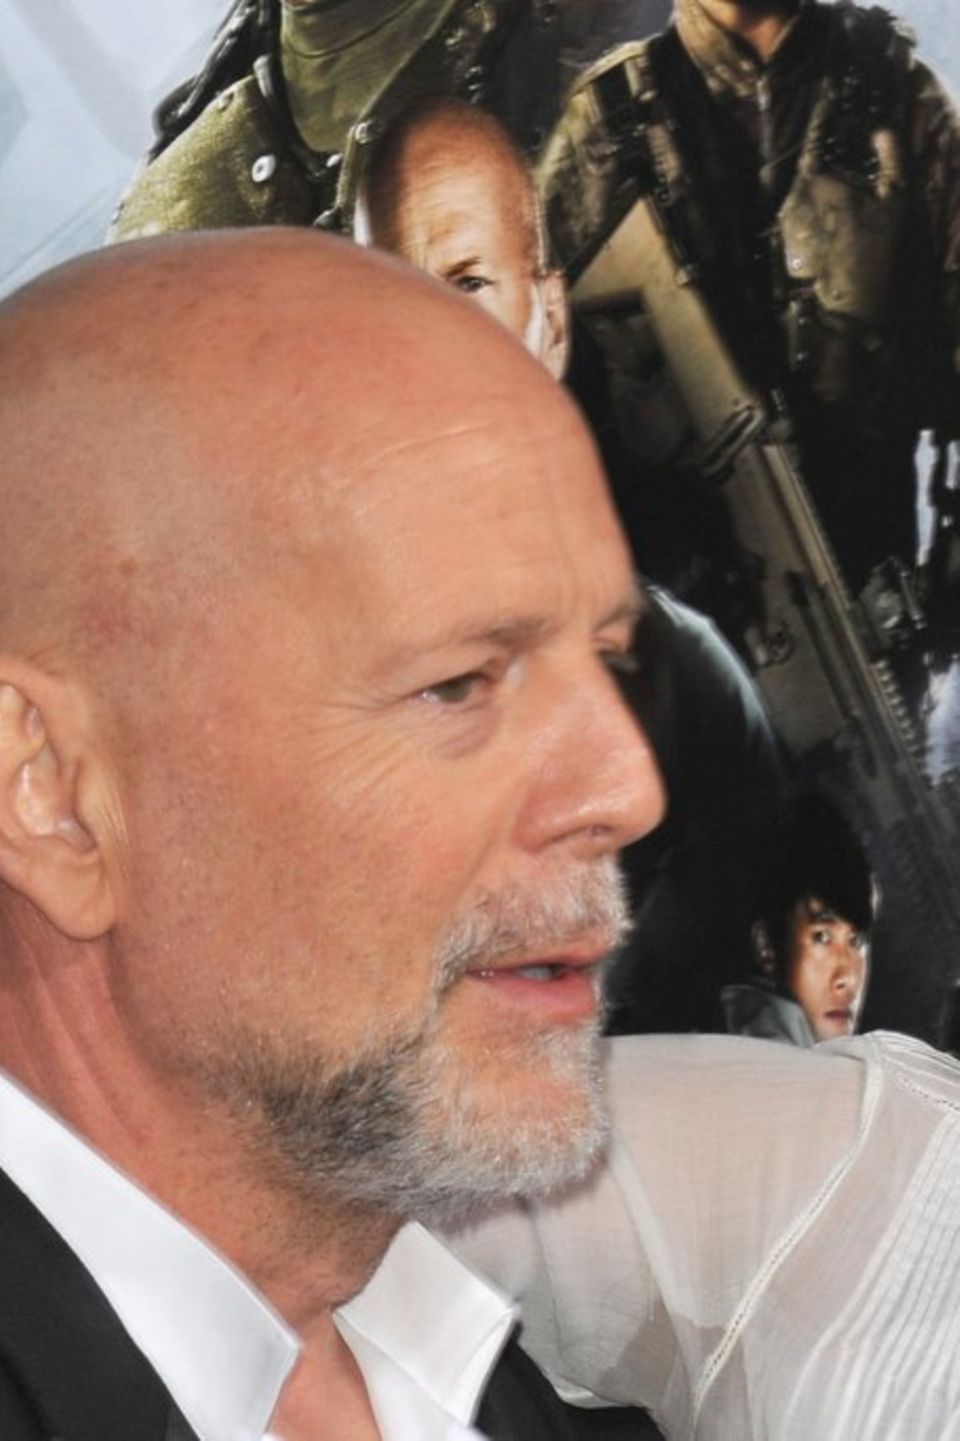 Bruce Willis und seine Tochter Rumer Willis haben ein gutes Verhältnis.